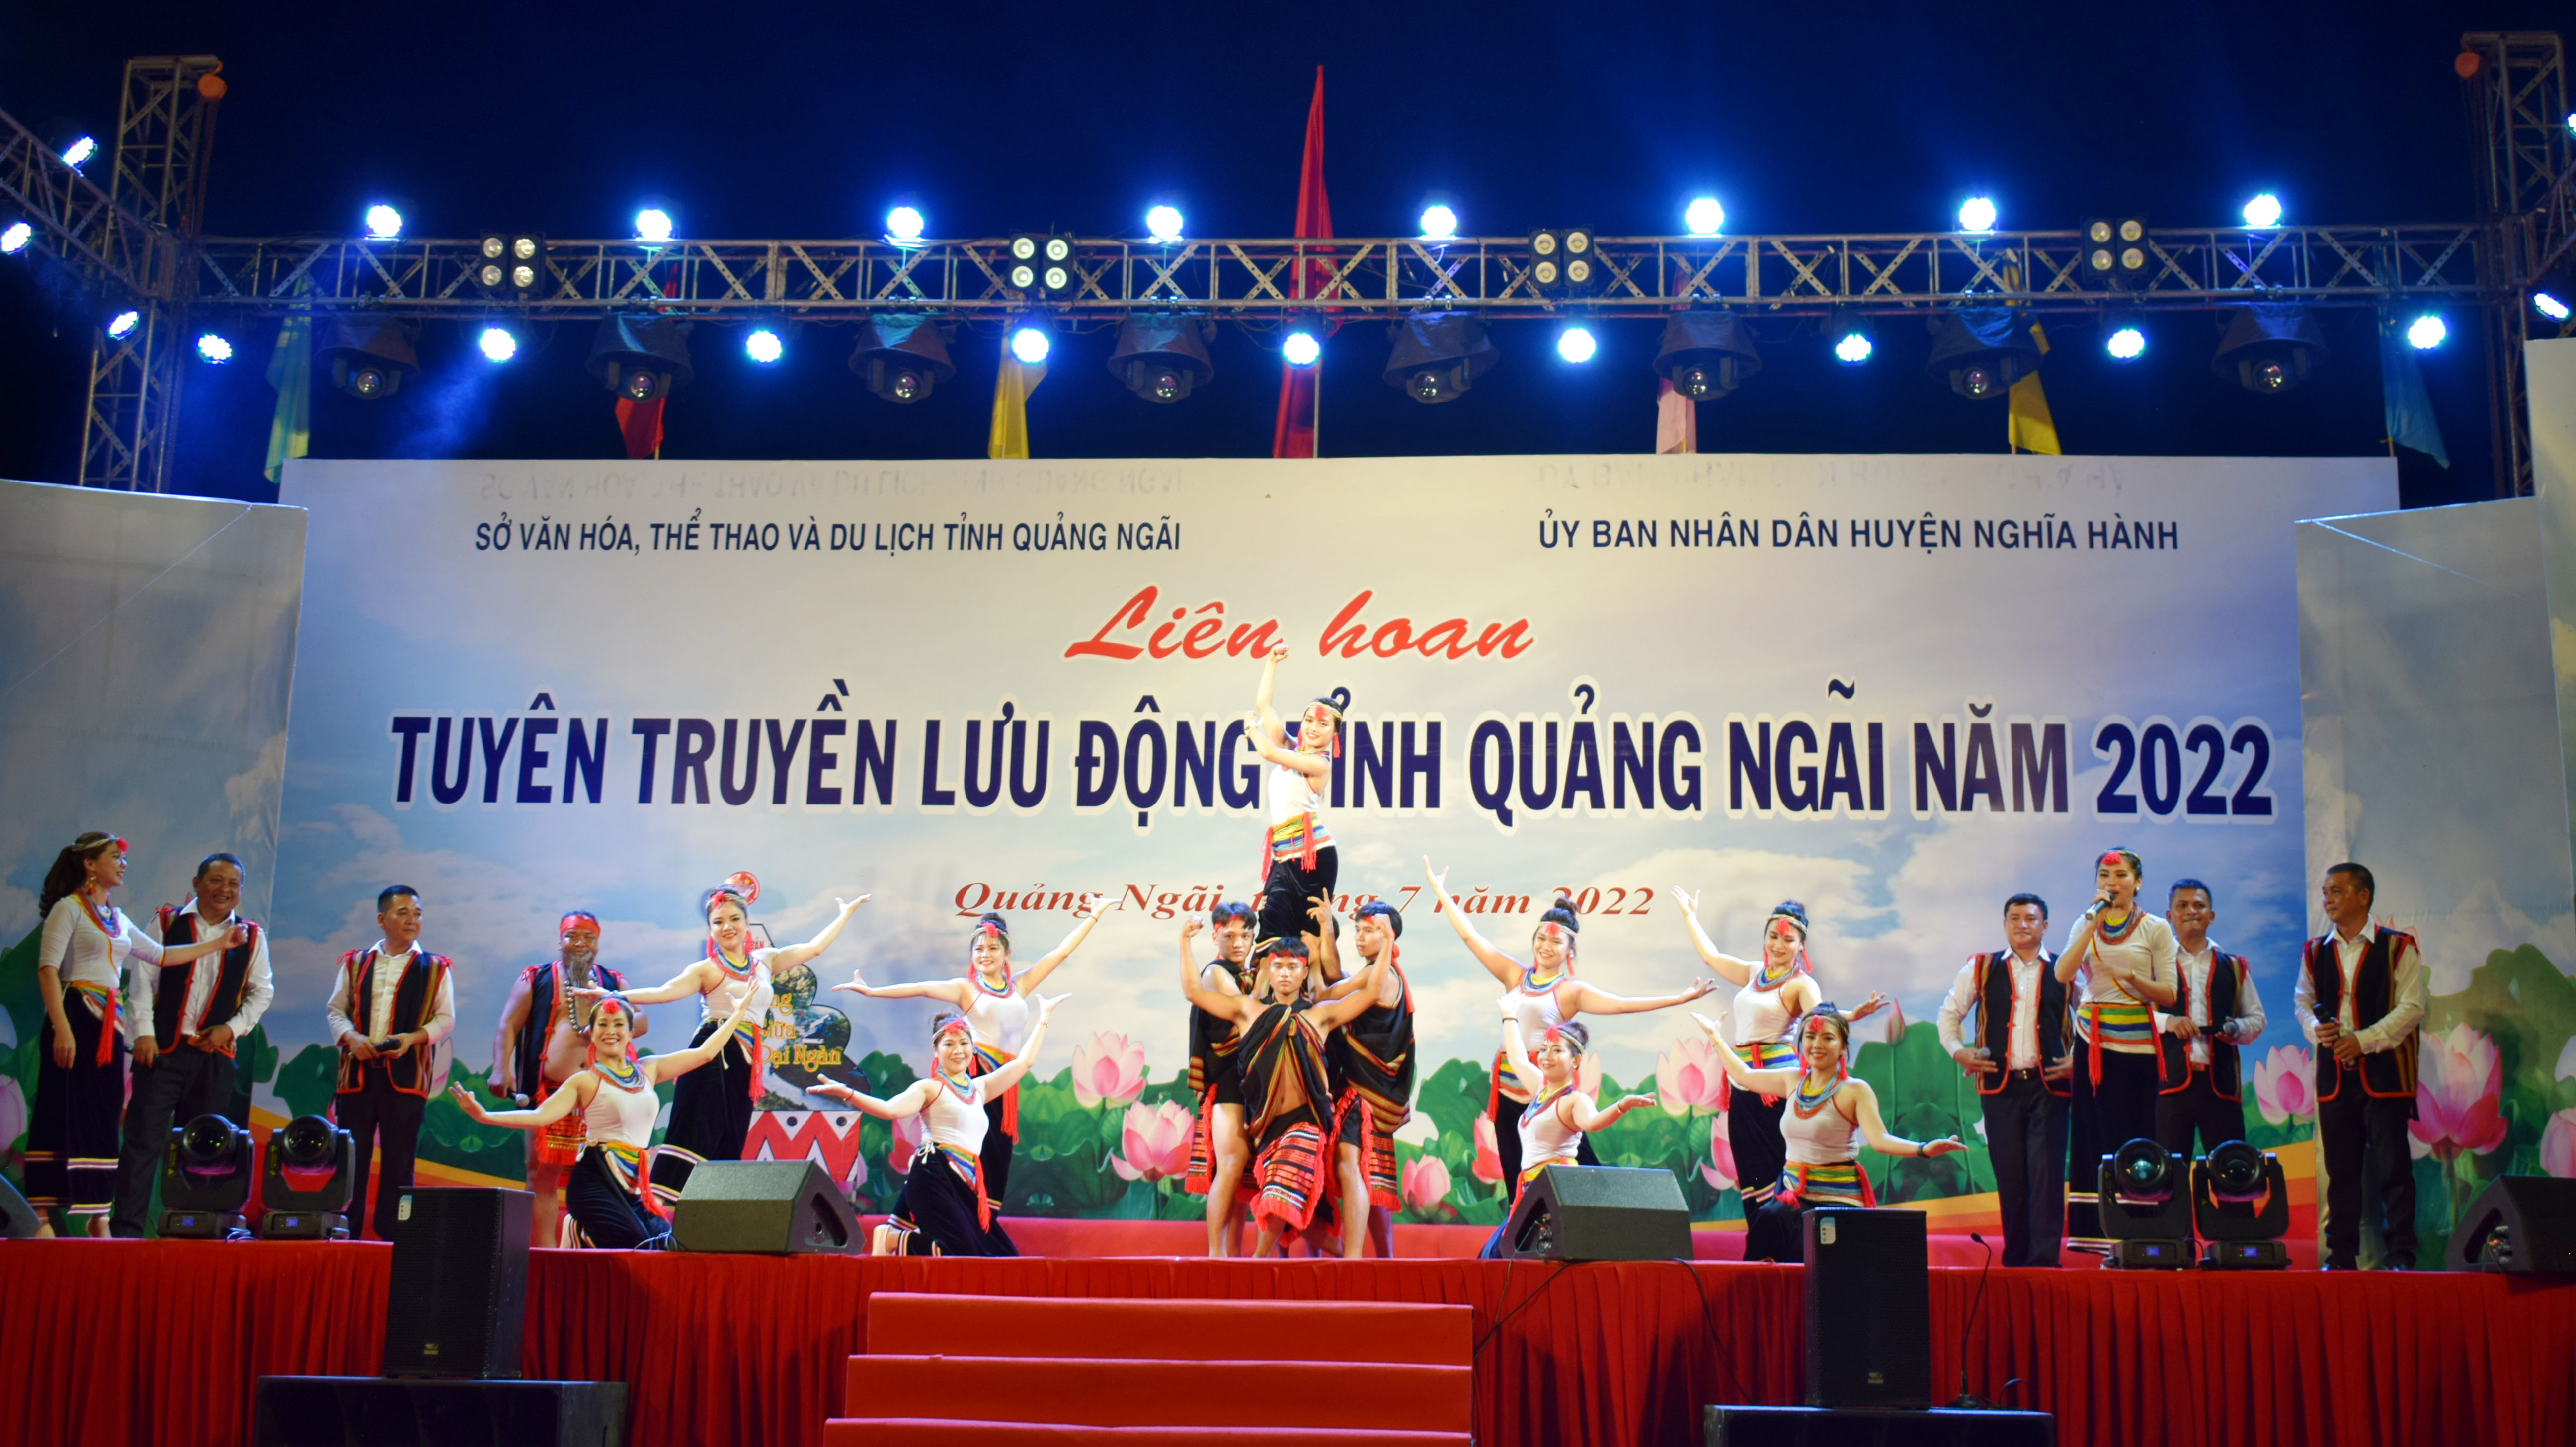 Trà Bồng tham dự liên hoan tuyên truyền lưu động tỉnh Quảng Ngãi năm 2022